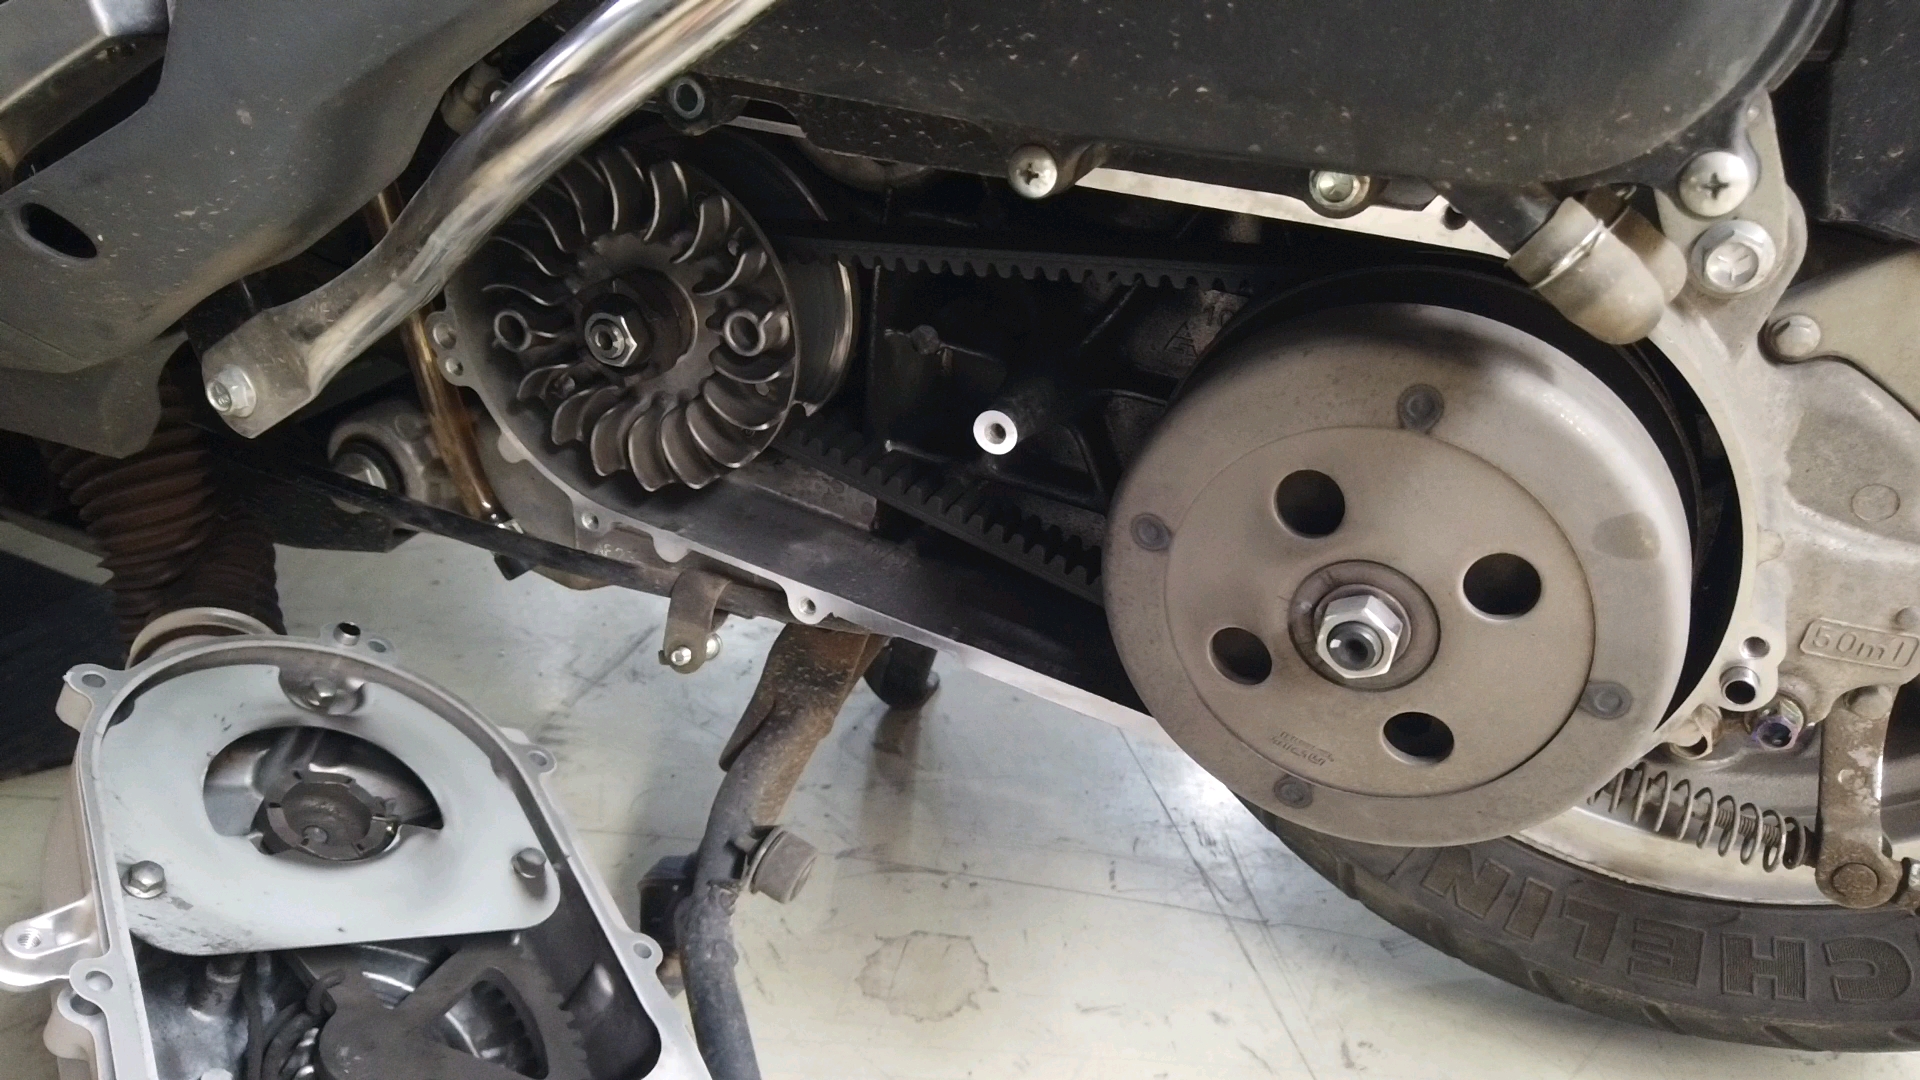 日本铃木uu125踏板摩托车后轮毂异响，排除了皮带，启动杆，后刹车，轴承的问题，看来后续只能拆齿轮箱了。